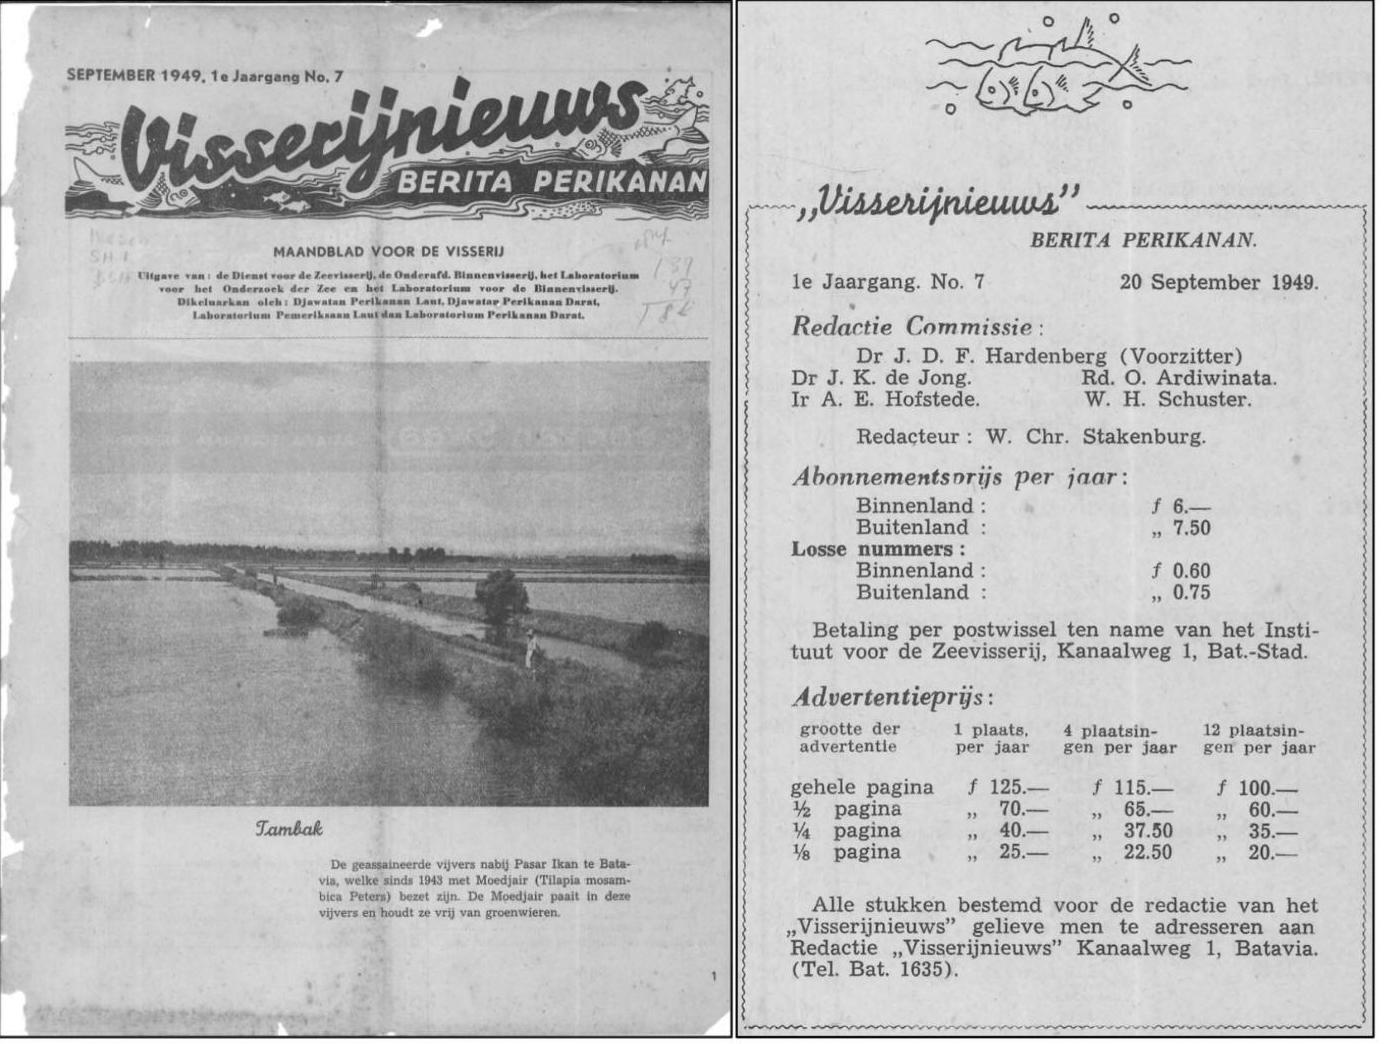 Figure 6. Berita Perikanan 1, 7 (September 1949). Source: Majalah Koleksi, Perpustakaan Nasional, Indonesia.